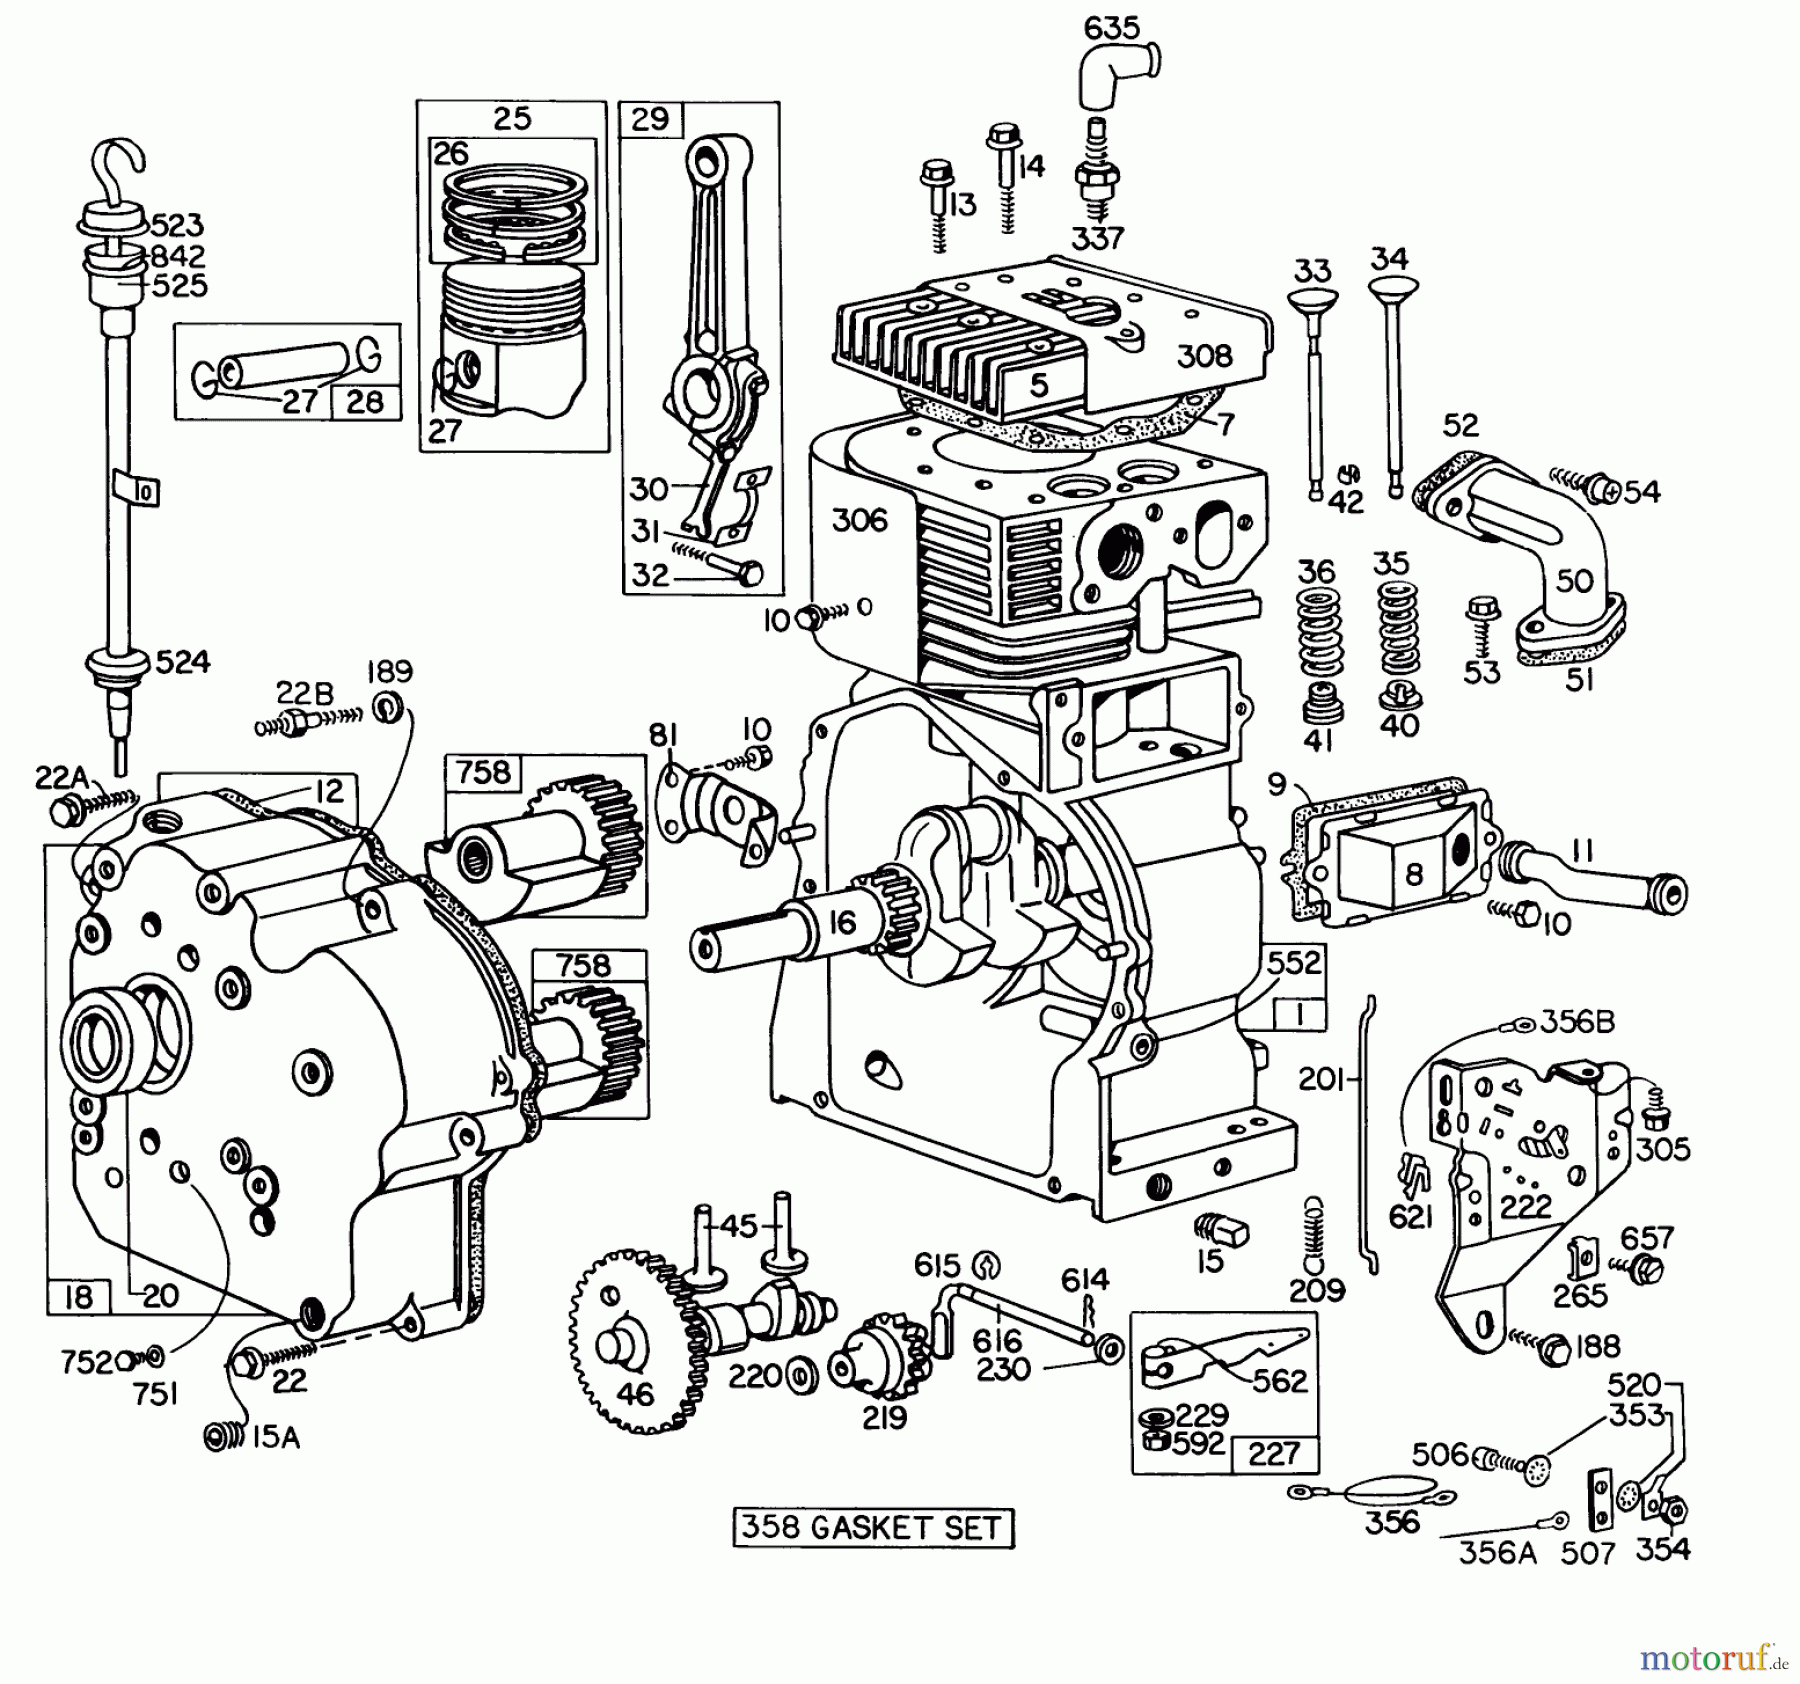  Toro Neu Snow Blowers/Snow Throwers Seite 1 31995 (1032) - Toro 1032 Snowthrower, 1976 (6000001-6999999) ENGINE BRIGGS & STRATTON MODEL NO. 251417 TYPE NO. 0140-01 #1